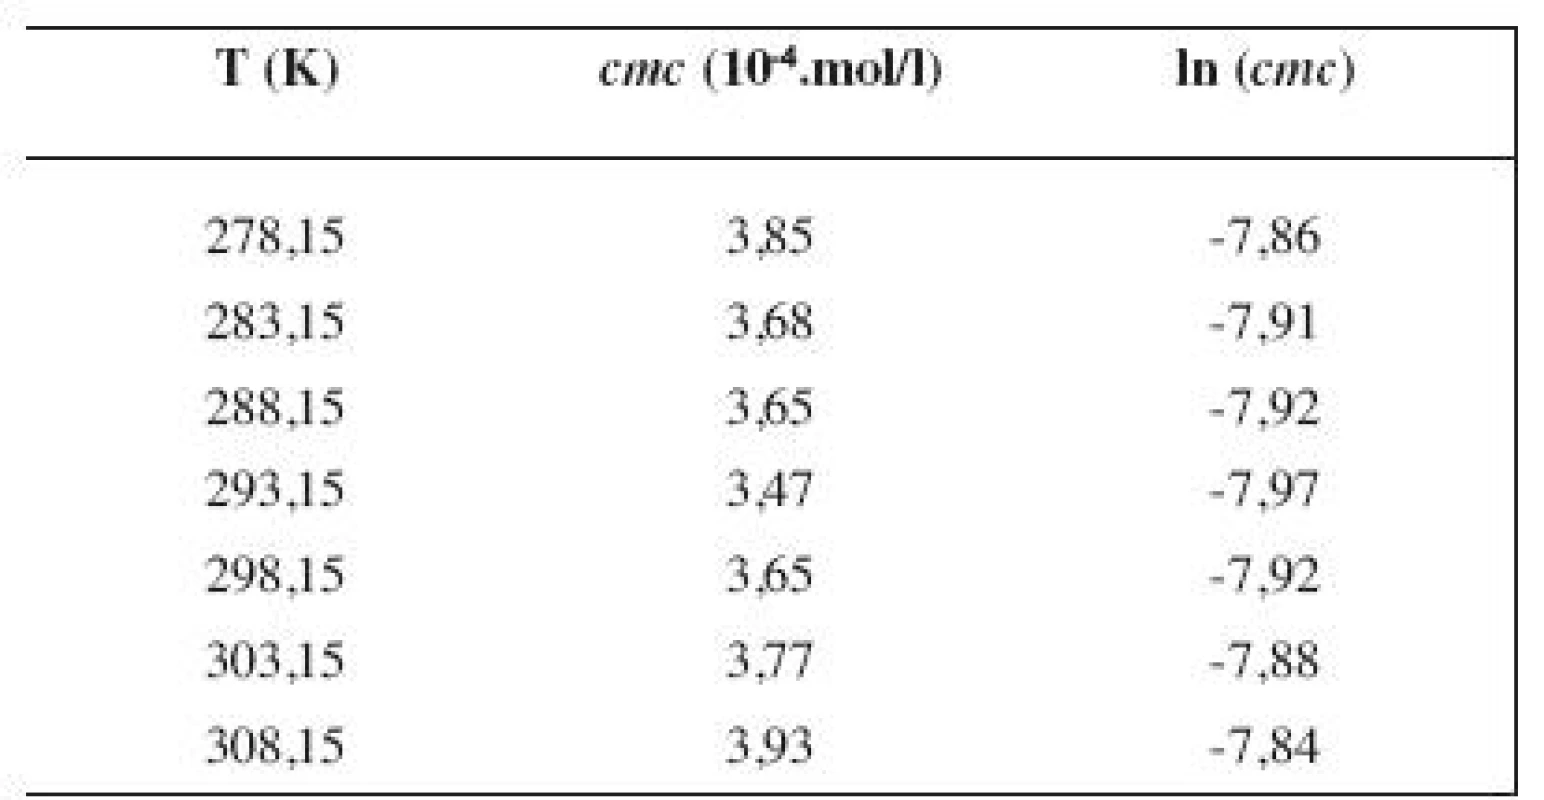 Zistené hodnoty &lt;i&gt;cmc&lt;/i&gt; a ln (&lt;i&gt;cmc&lt;/i&gt;) meranej látky v 3 mol/l metanolovom roztoku